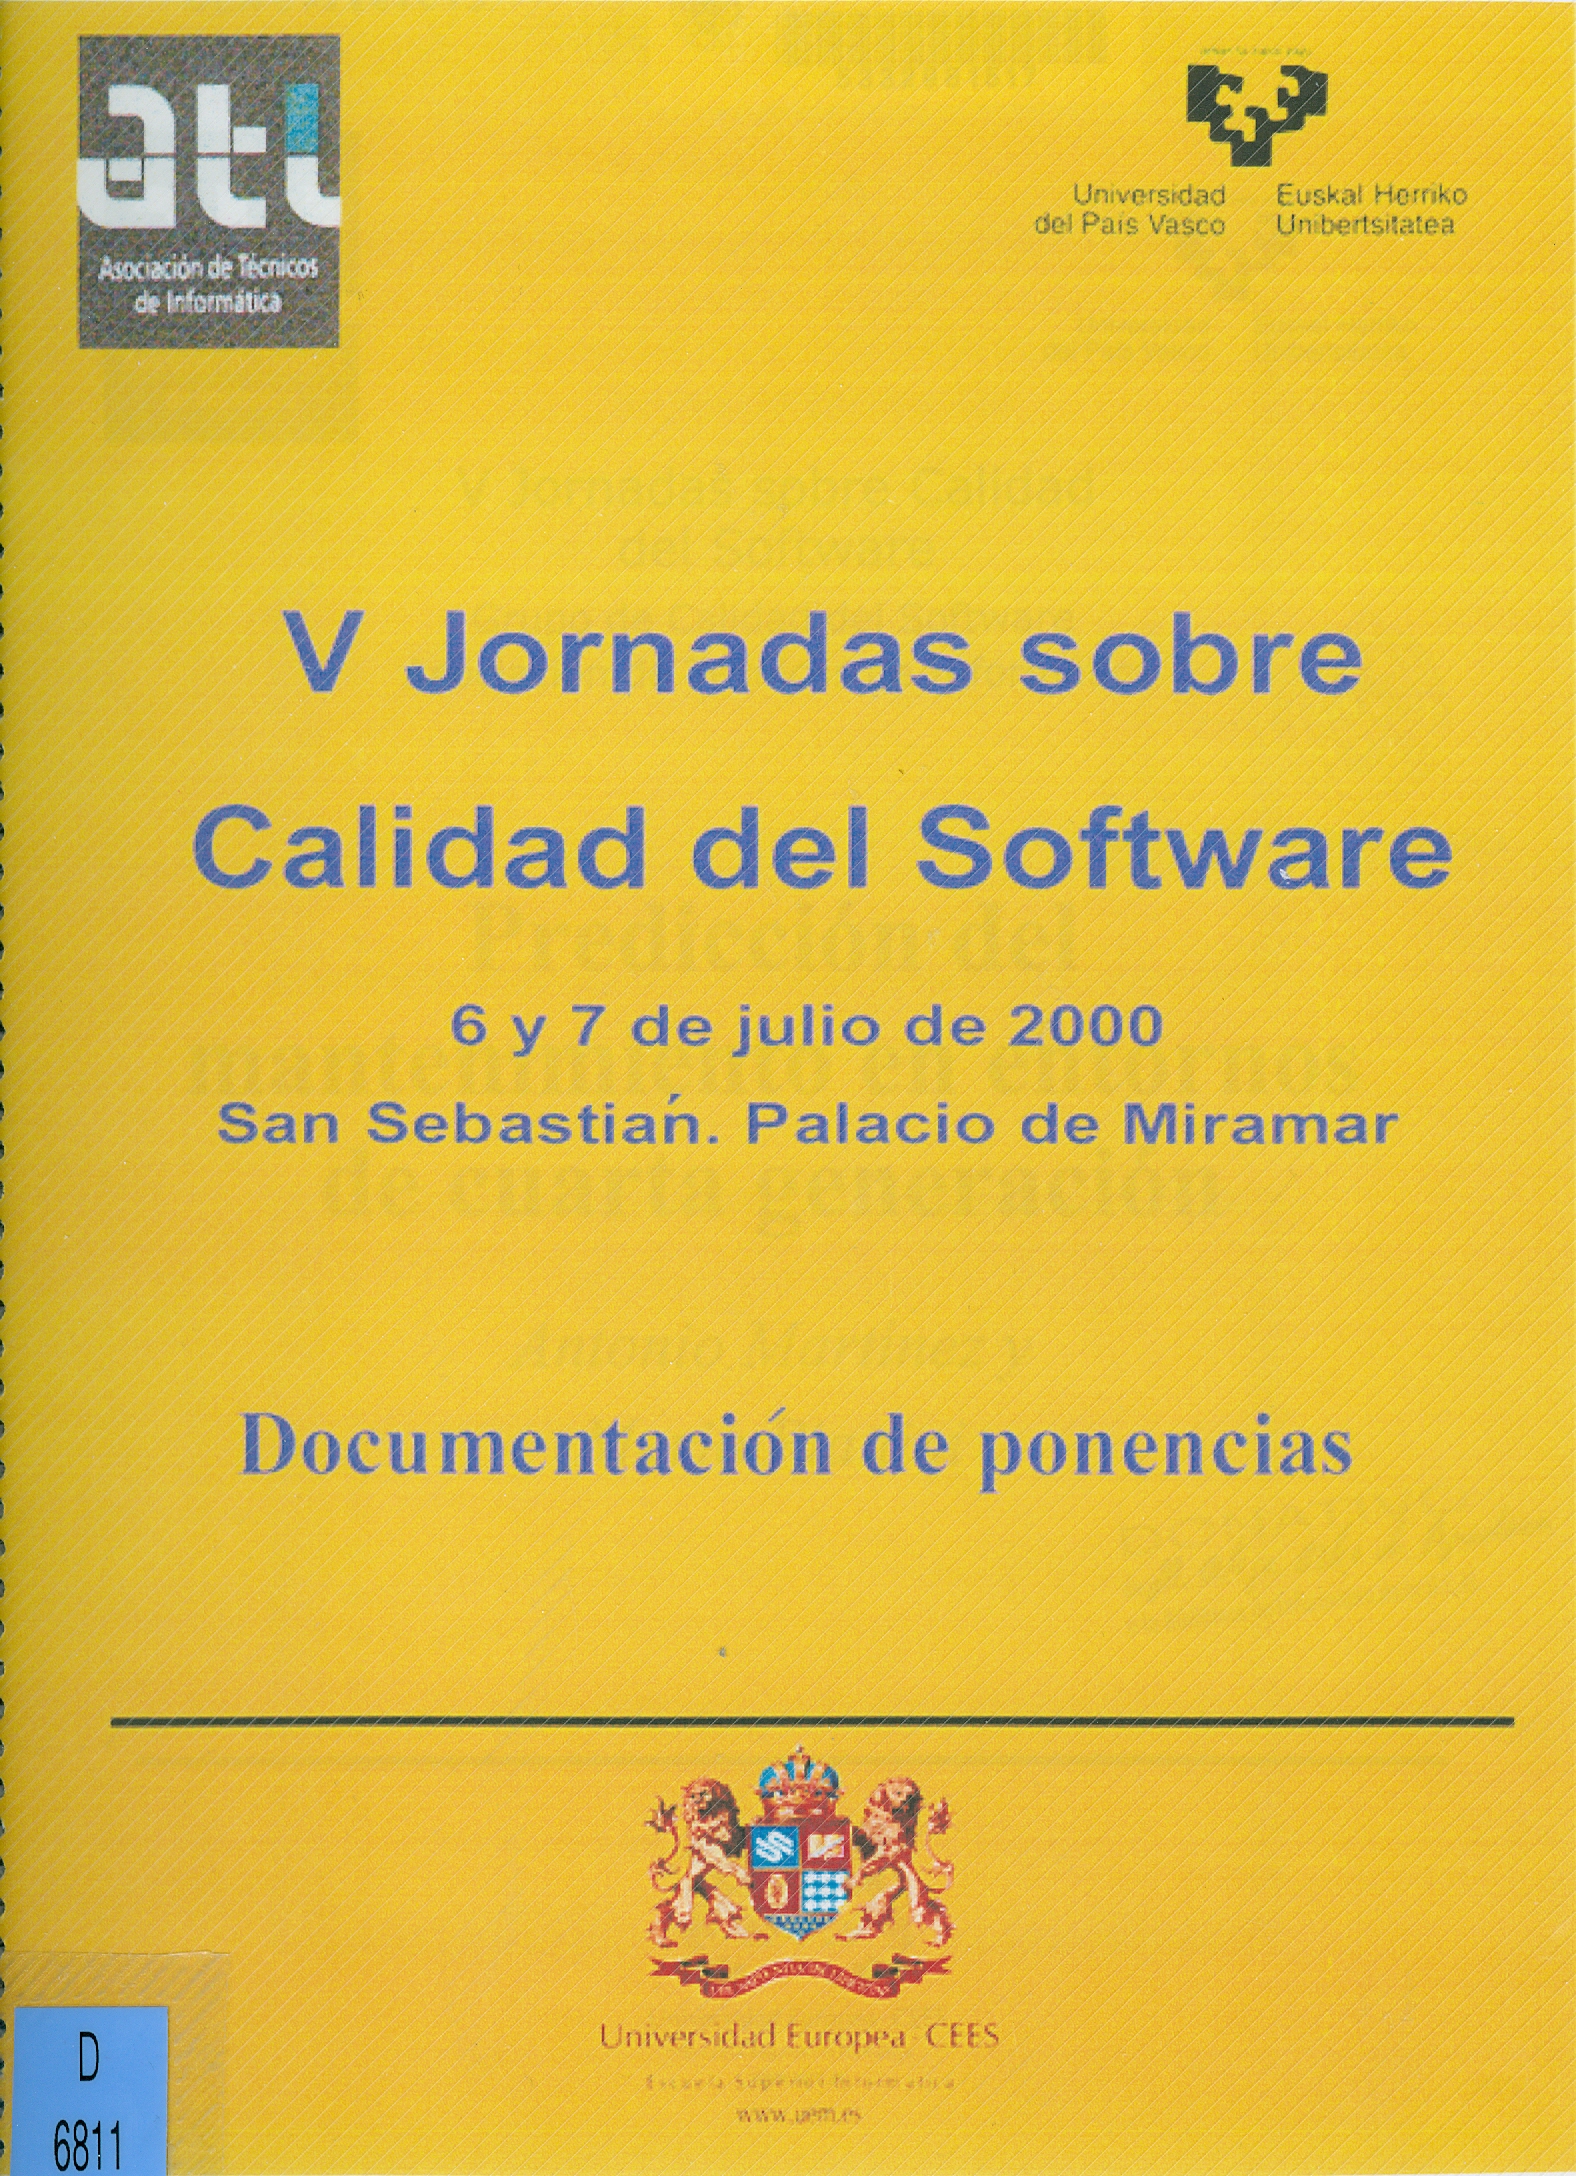 Imagen de portada del libro V Jornadas sobre Calidad del Software, 6 y 7 de julio de 2000. San Sebastián, Palacio de Miramar